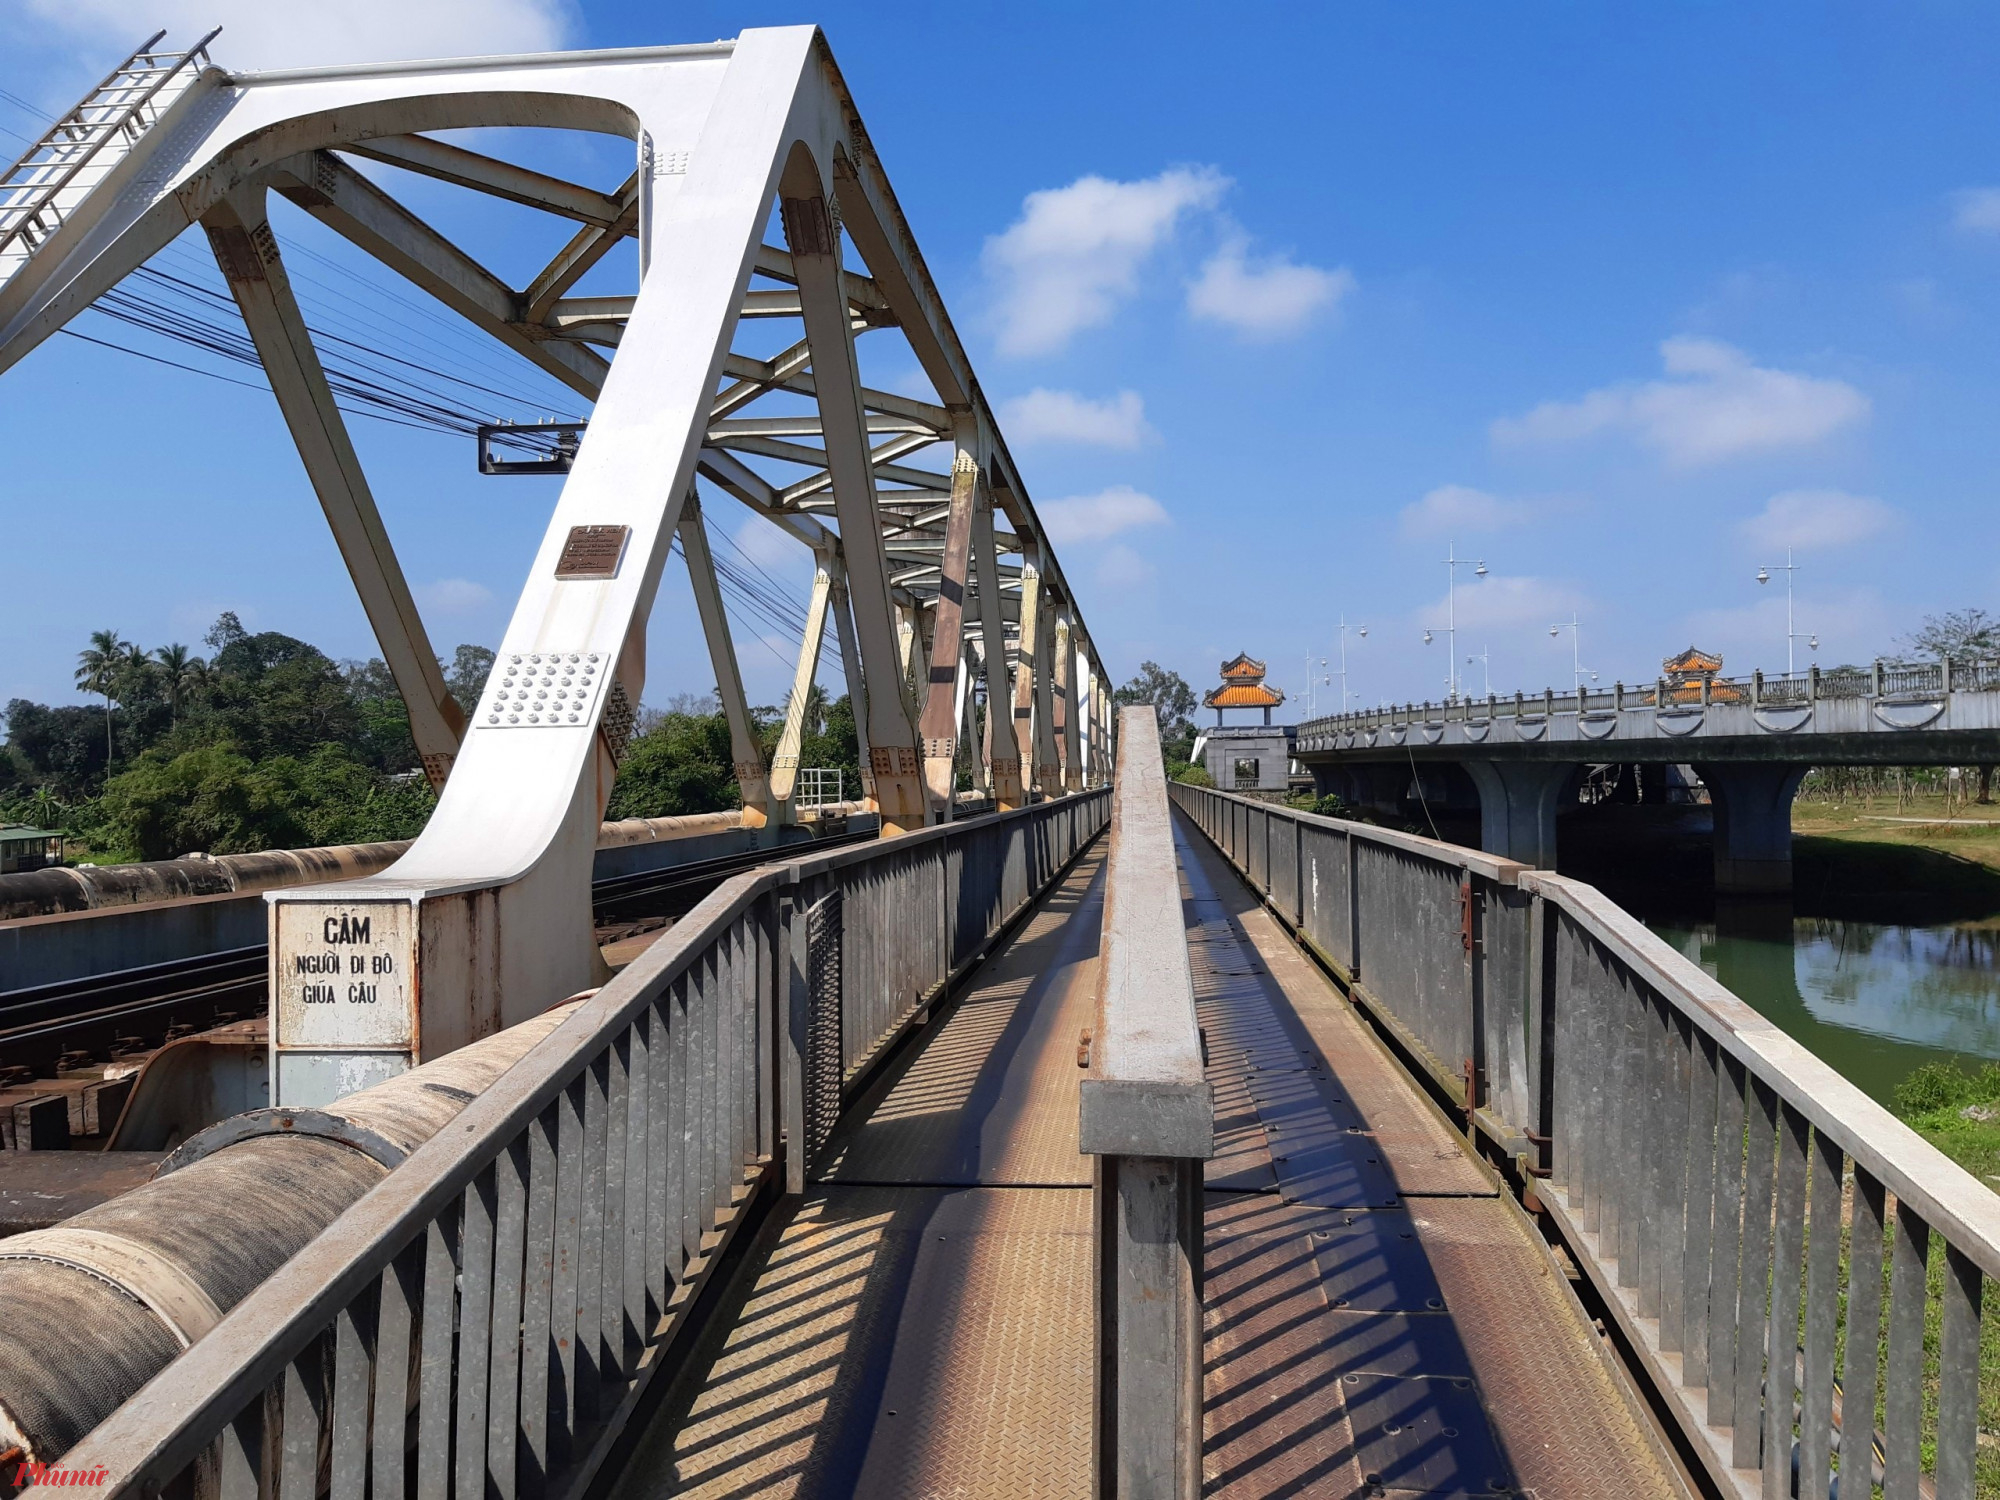 Cầu Bạch Hổ là cây cầu đường sắt có tuổi đời hơn một thế kỷ ở vùng đất cố đô Huế. Không chỉ có giá trị về lịch sử, cầu Bạch Hồ còn là một điểm đến với nhiều góc sống ảo thần thánh dành cho các tín đồ du lịch.